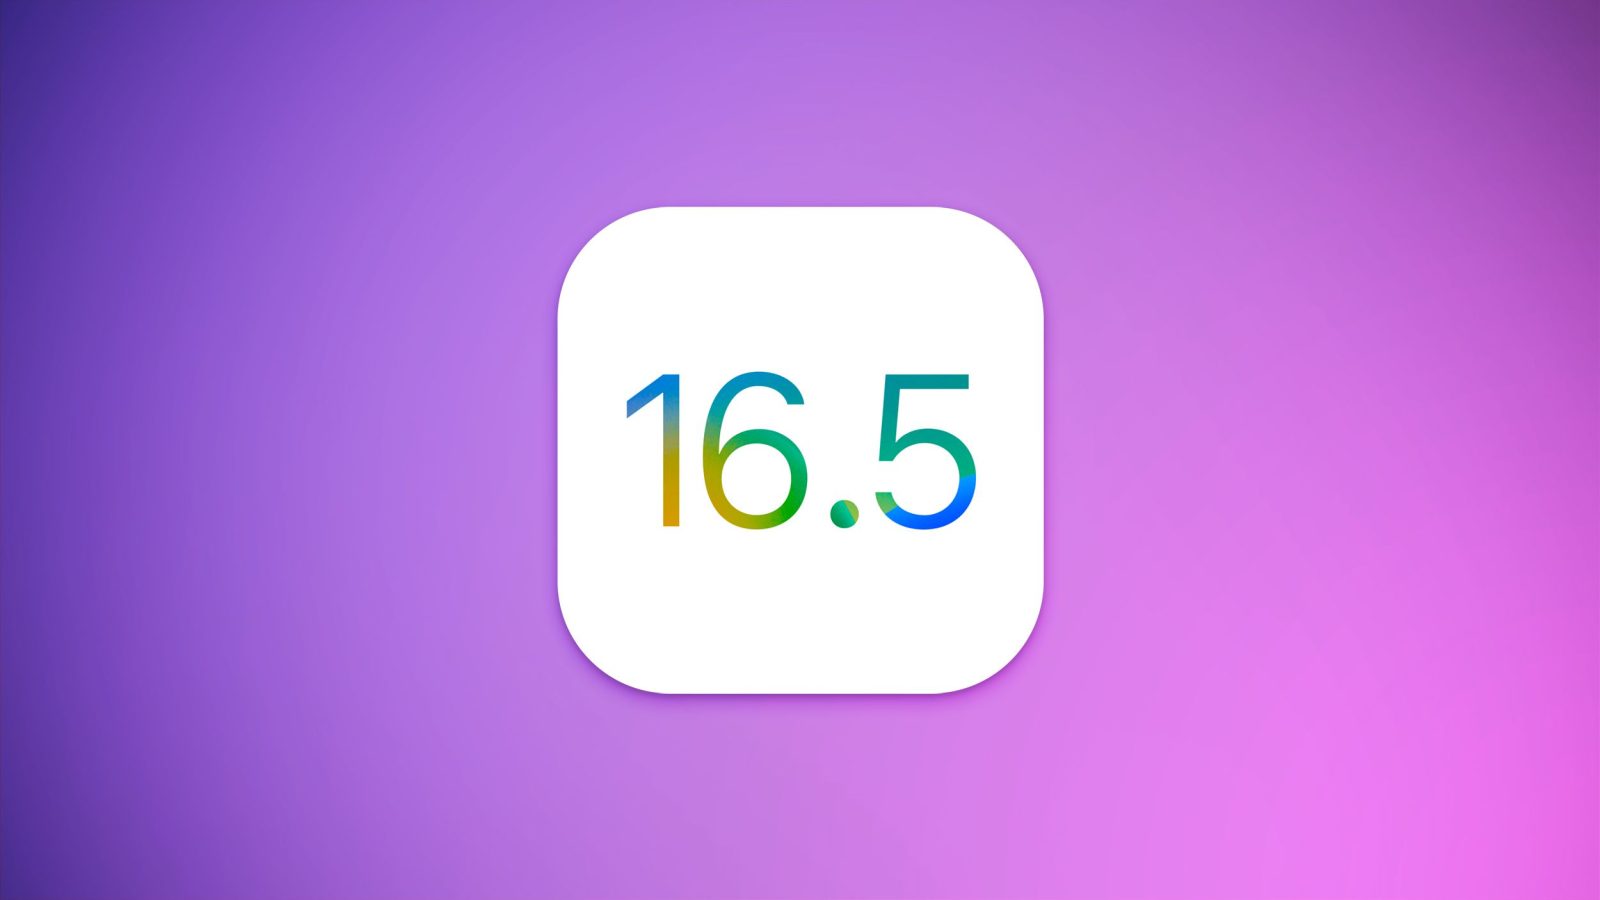 سیستم عامل iOS 16.5 و iPadOS 16.5 منتشر شدند